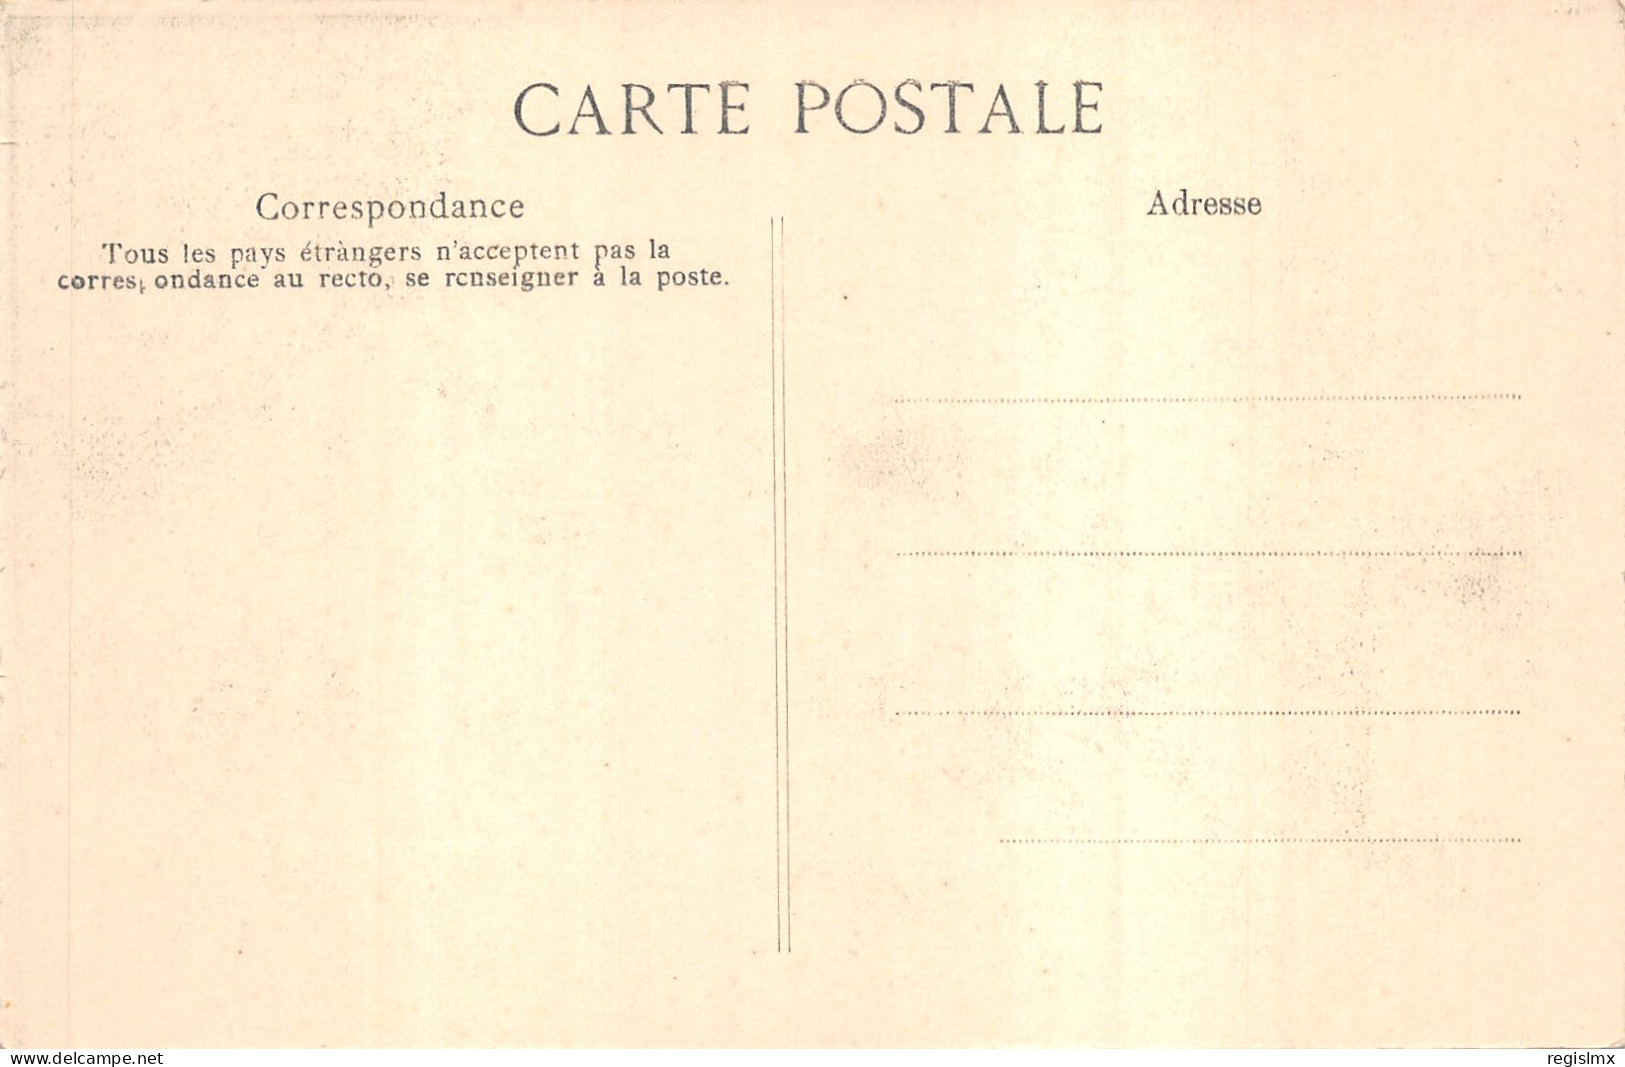 75-PARIS-CRUE DE LA SEINE-N°T2408-A/0129 - Inondations De 1910